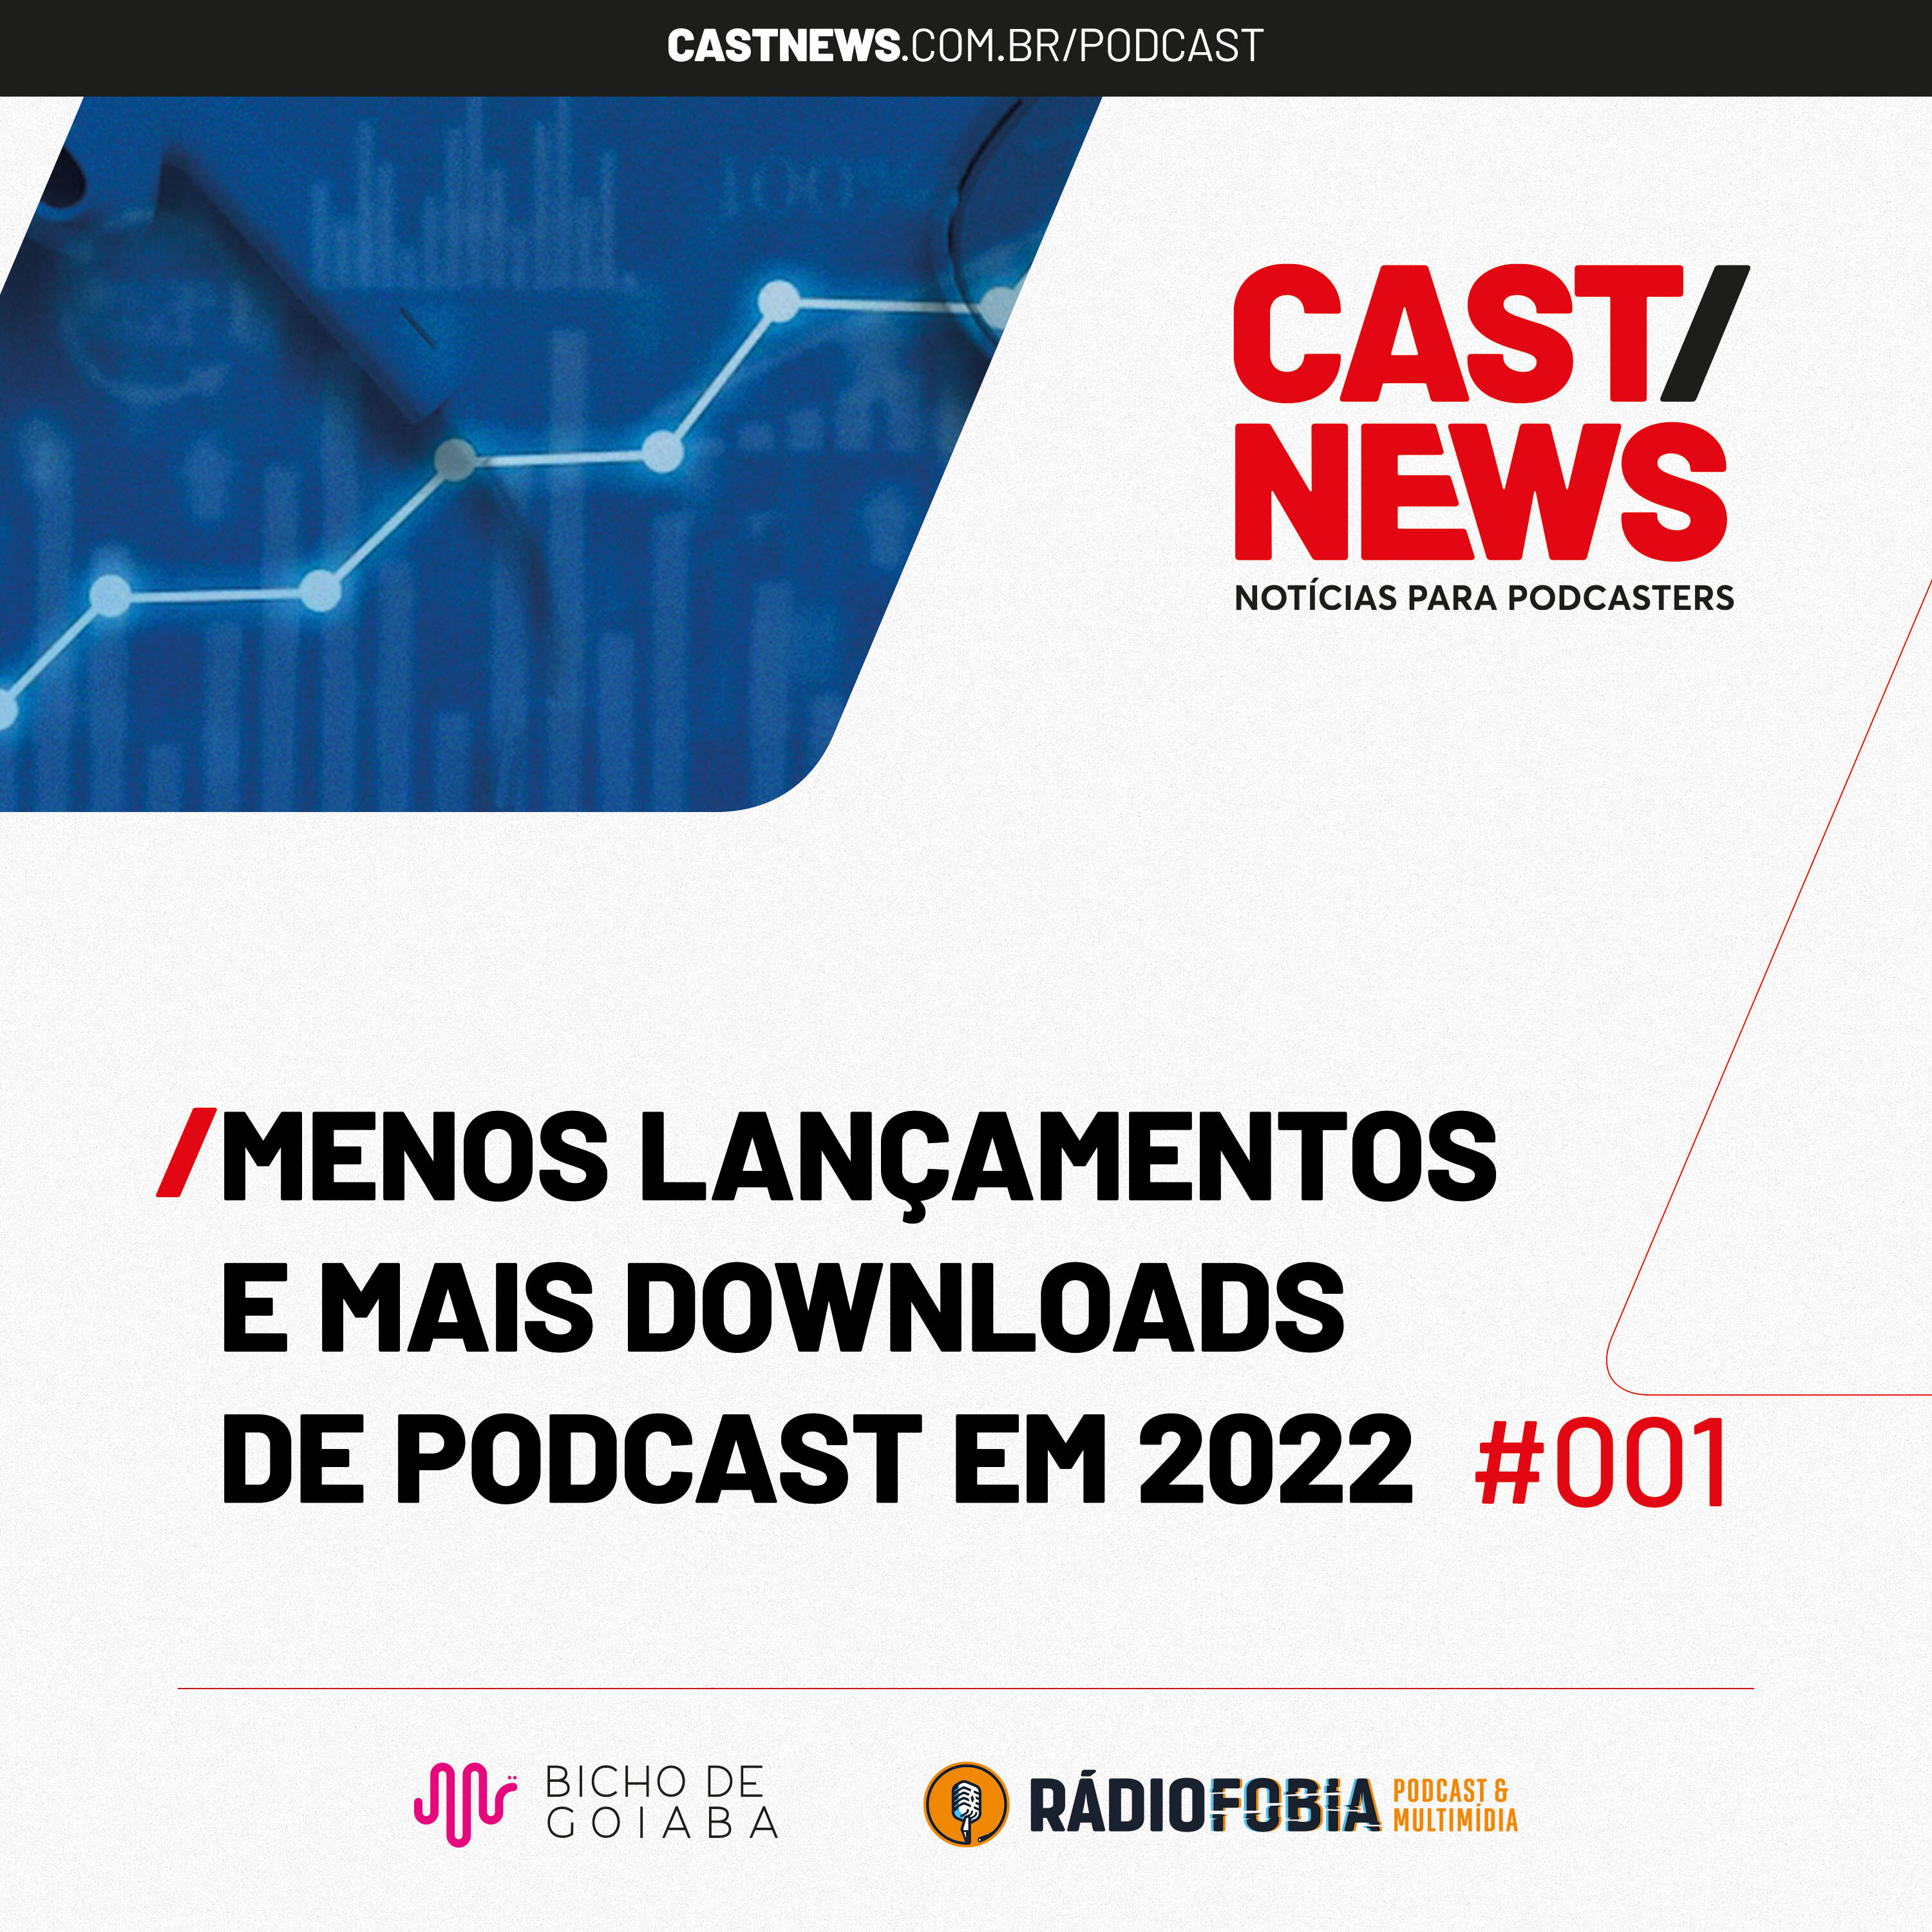 CASTNEWS #001 - Menos lançamentos e mais downloads de podcast em 2022